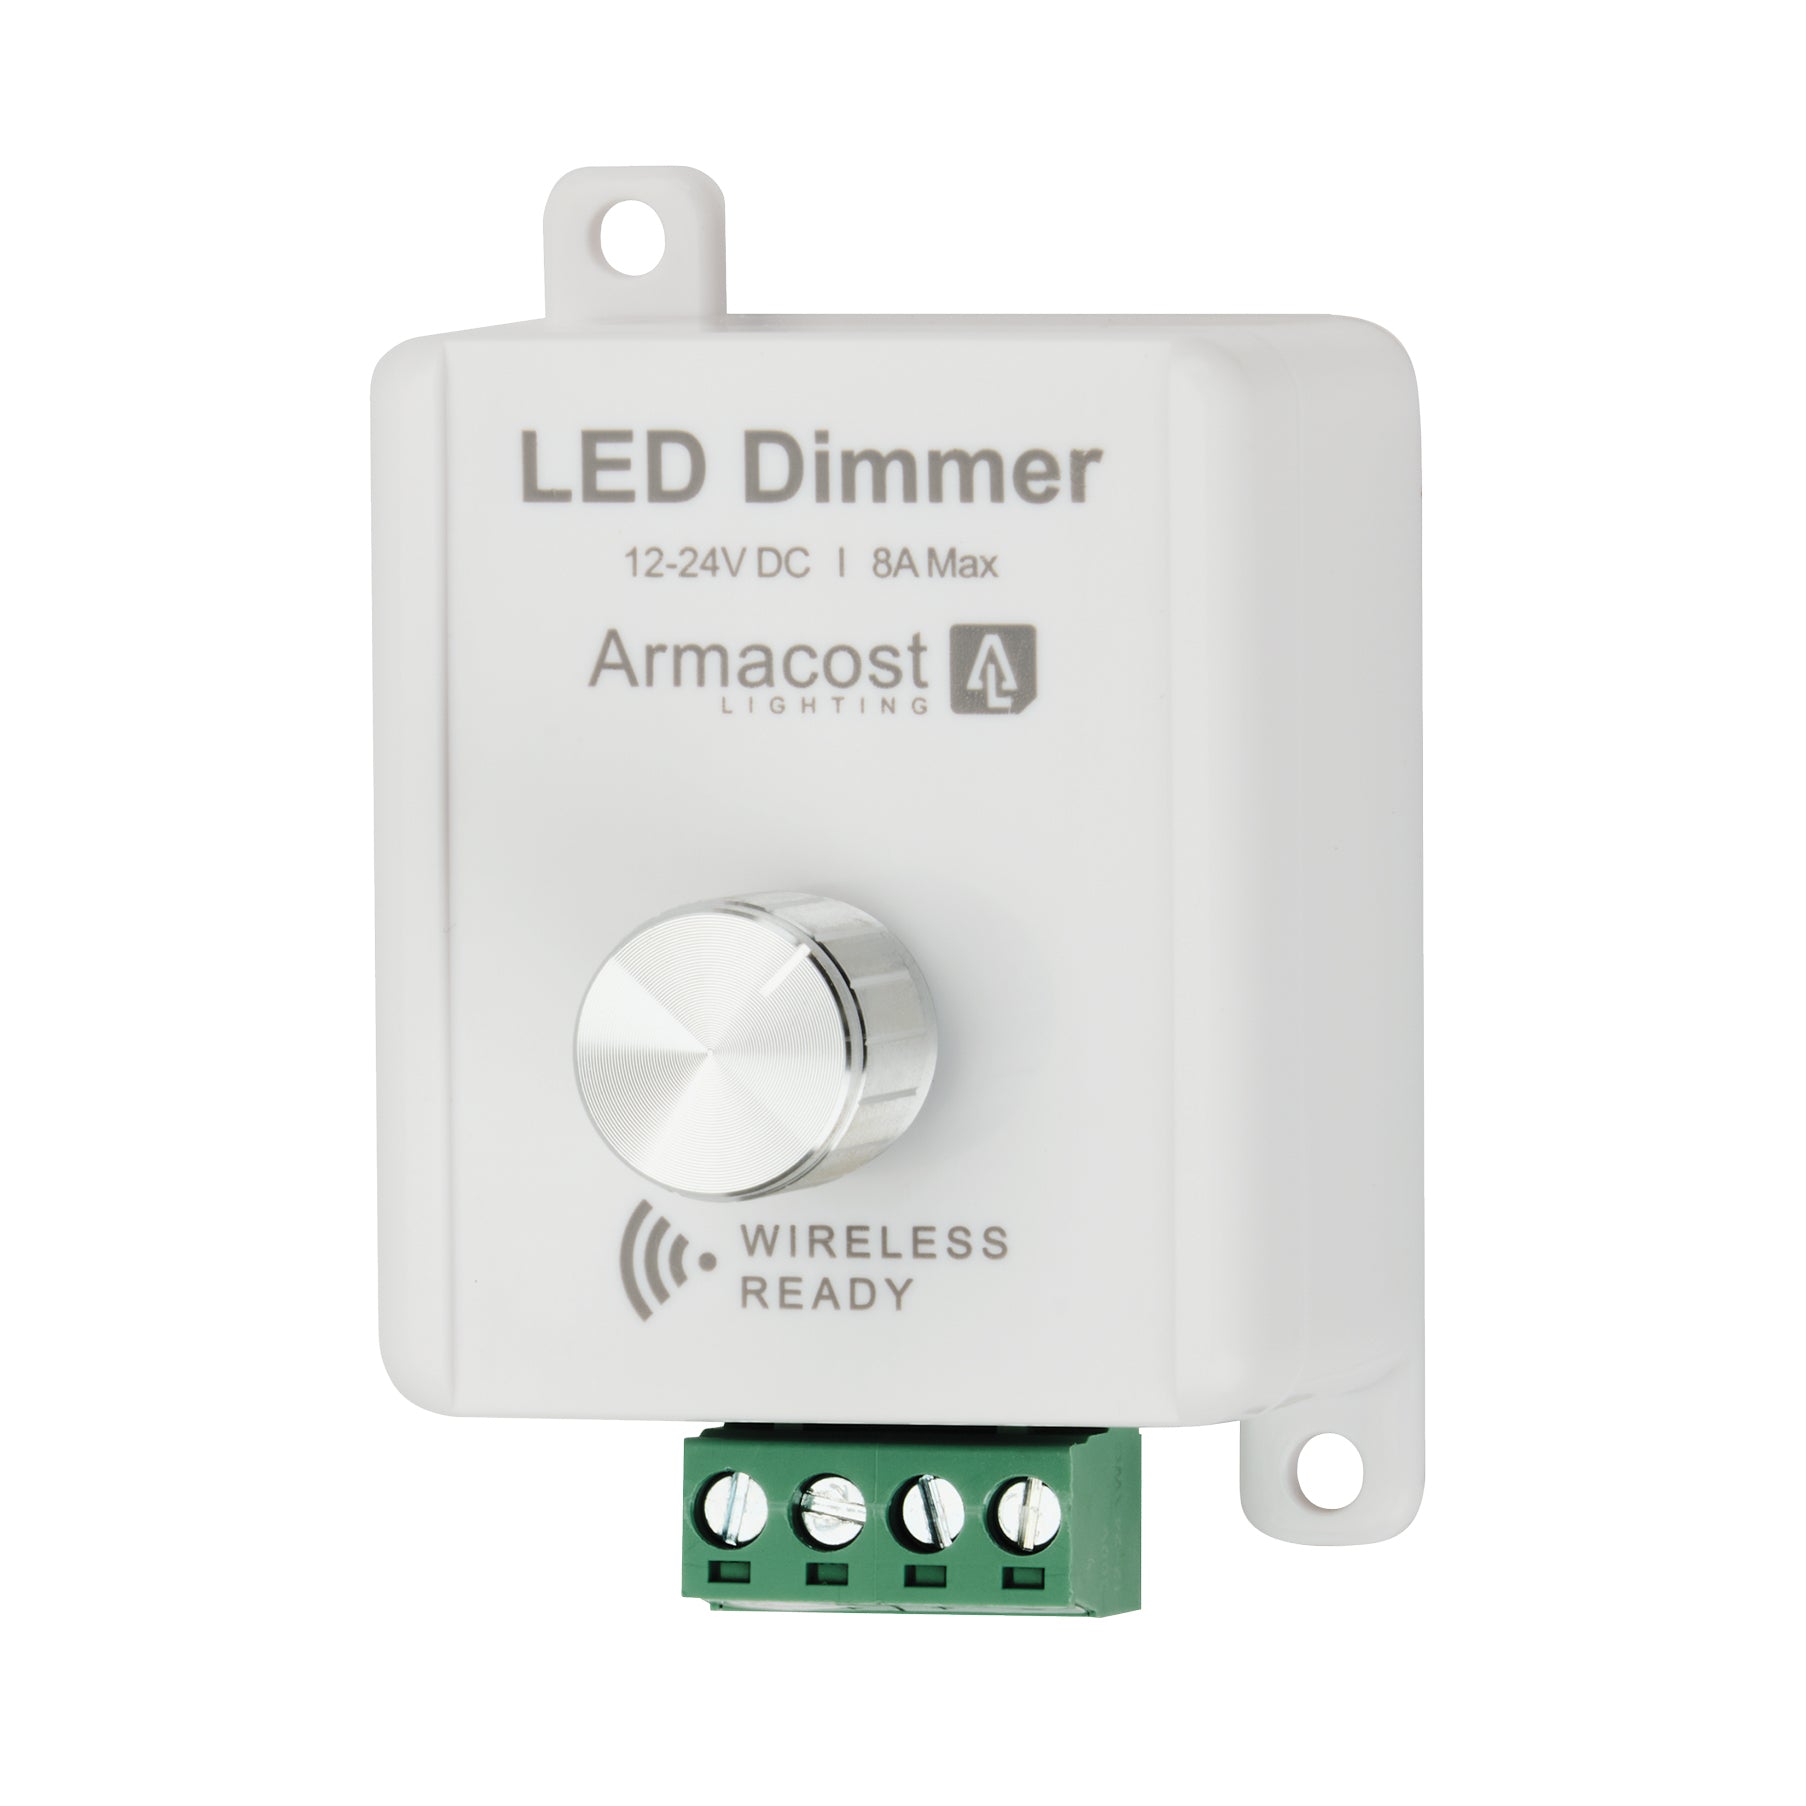 LED Dimmer 